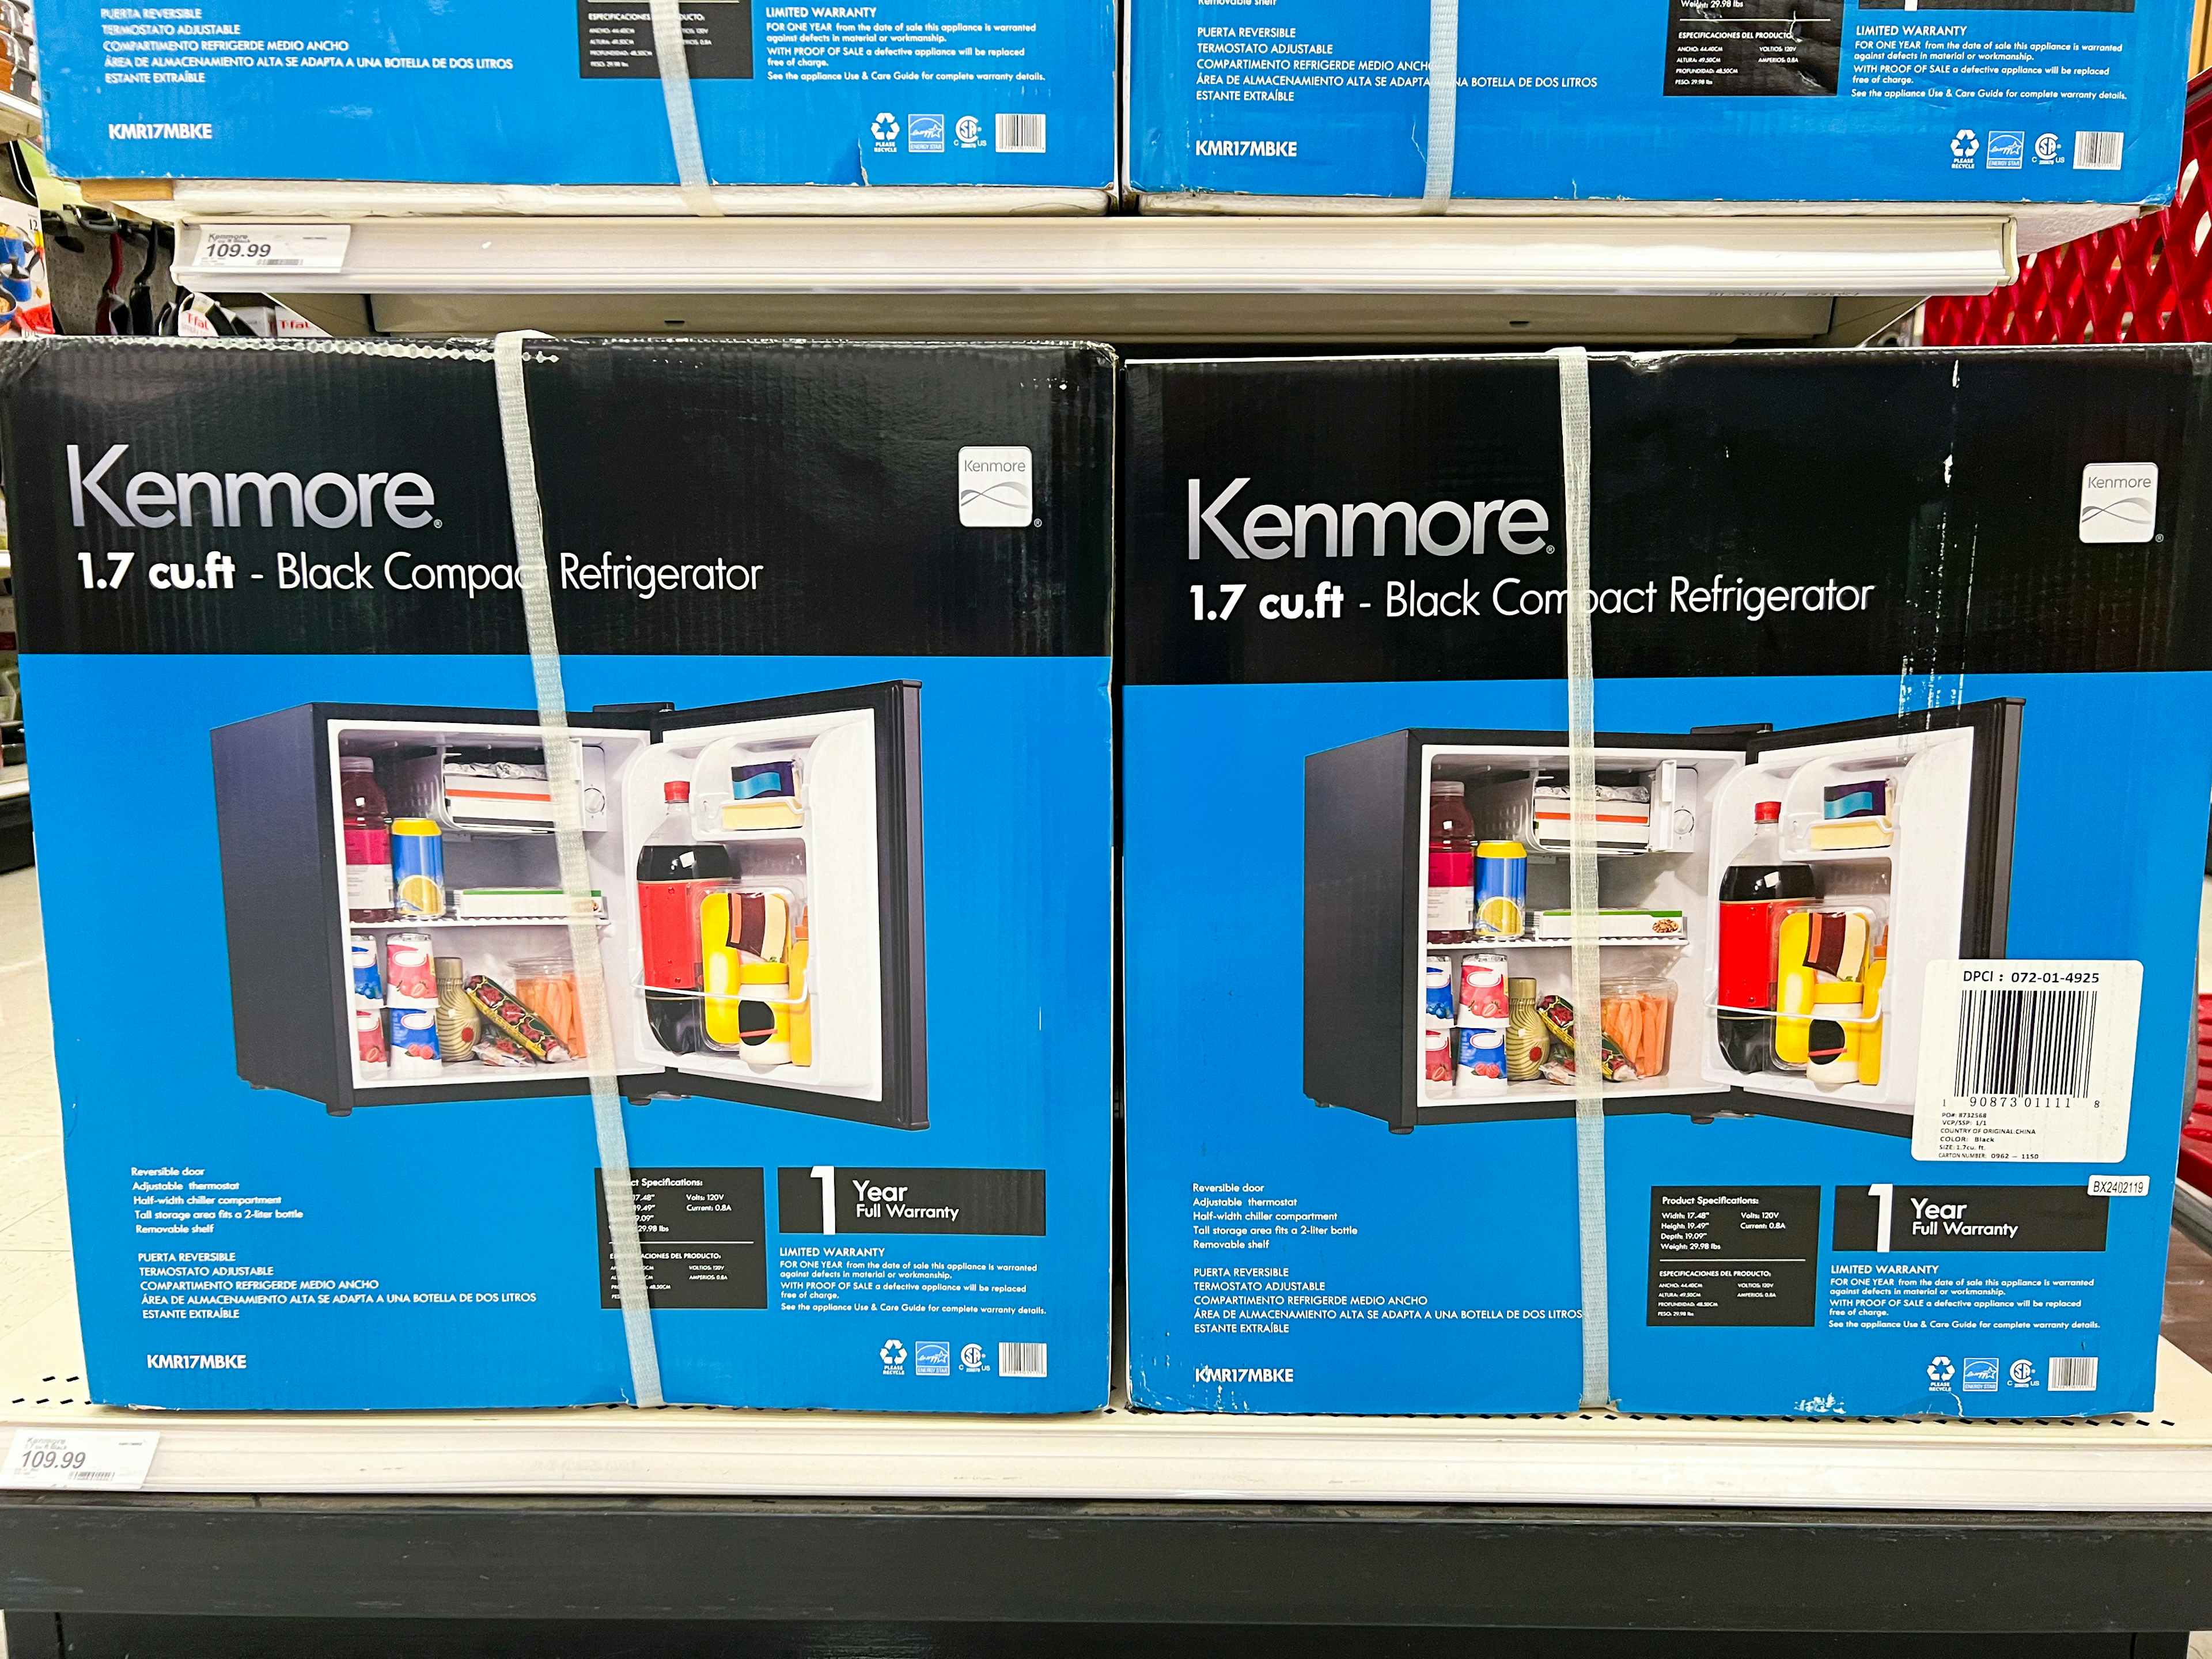 kenmore-refrigerator-target3